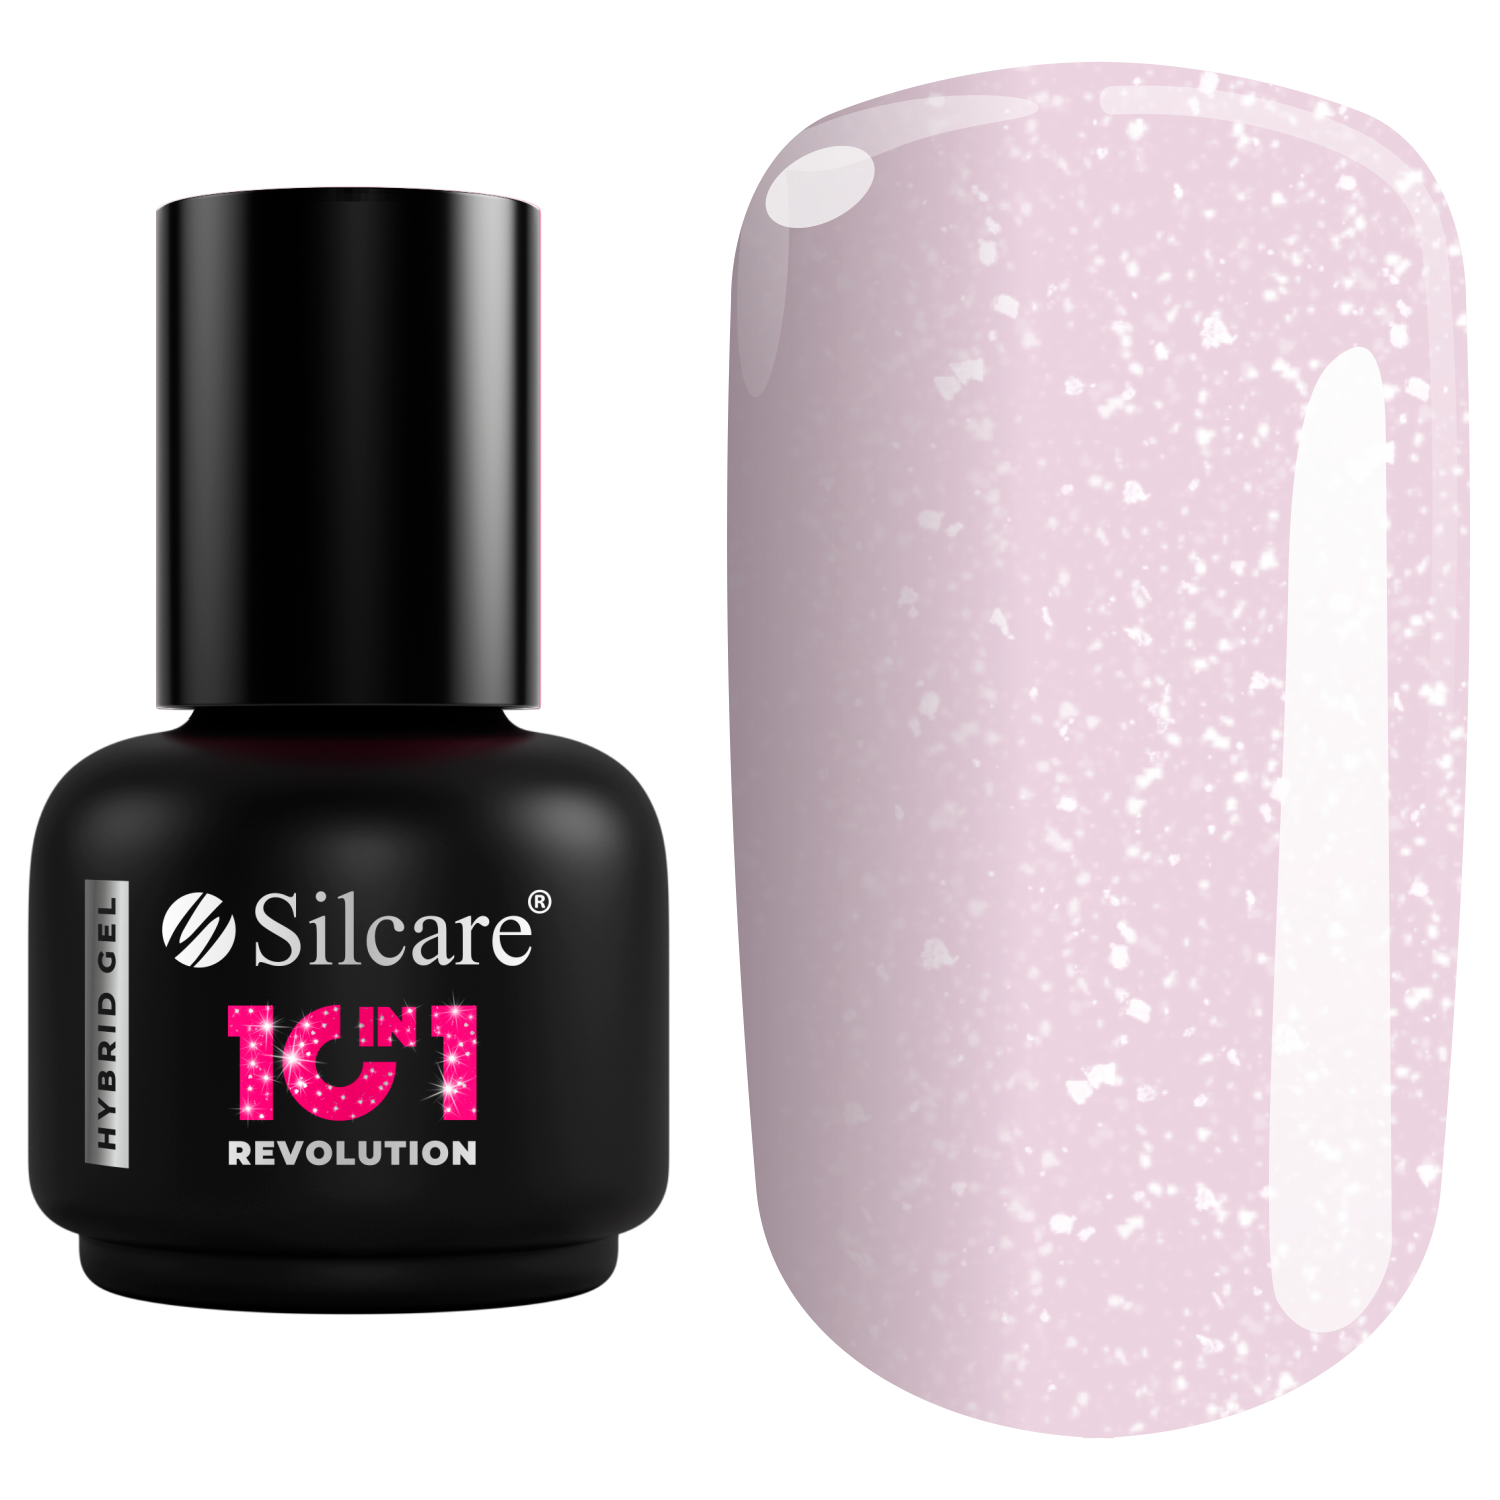 Гибридный лак для ногтей сверкающий фиолетовый Silcare 10In1, 15 мл